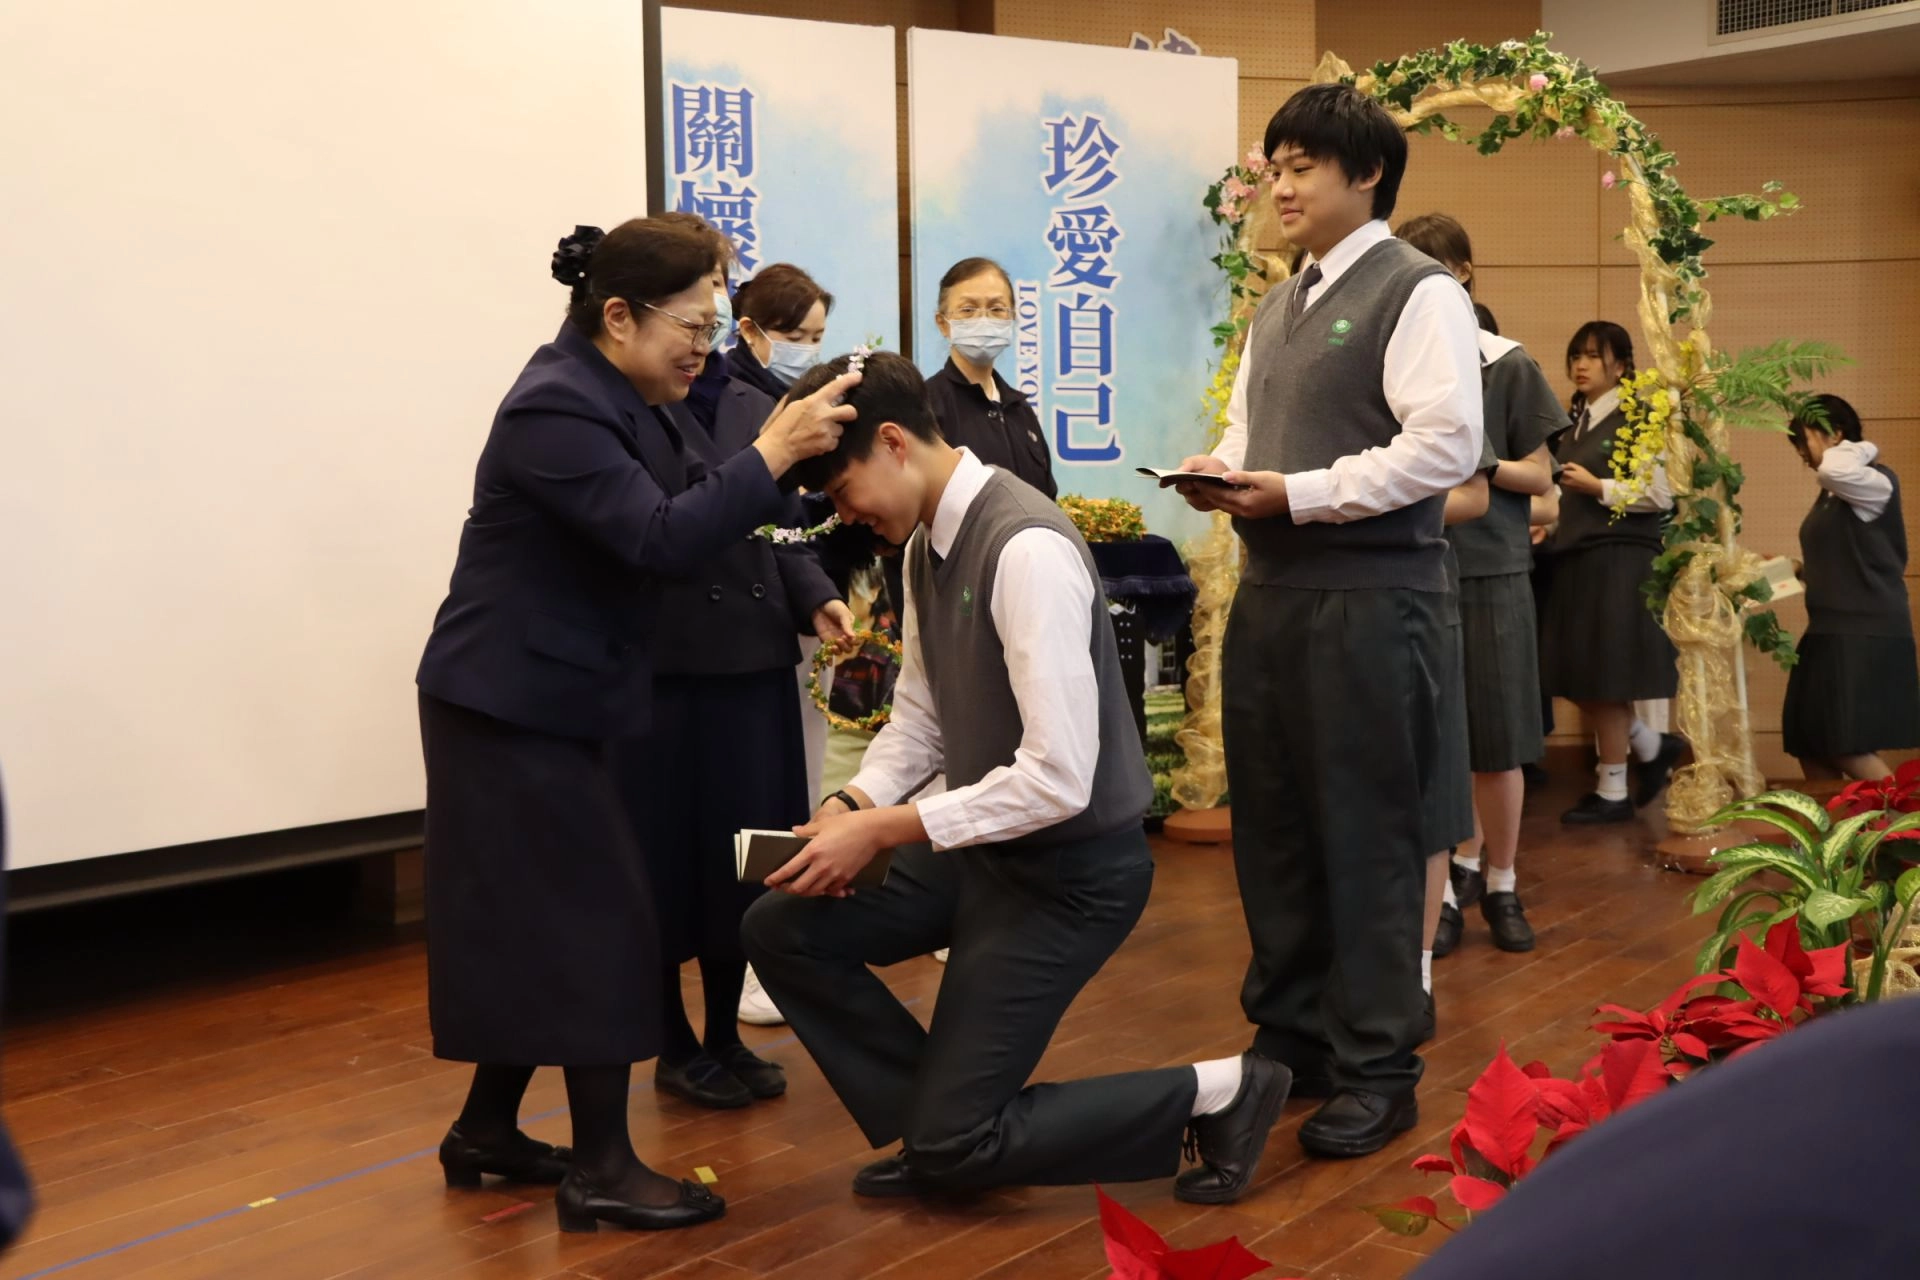 校長李玲惠於「敬青春 加冠典禮」上親自為同學們戴上象徵「成年」的花冠